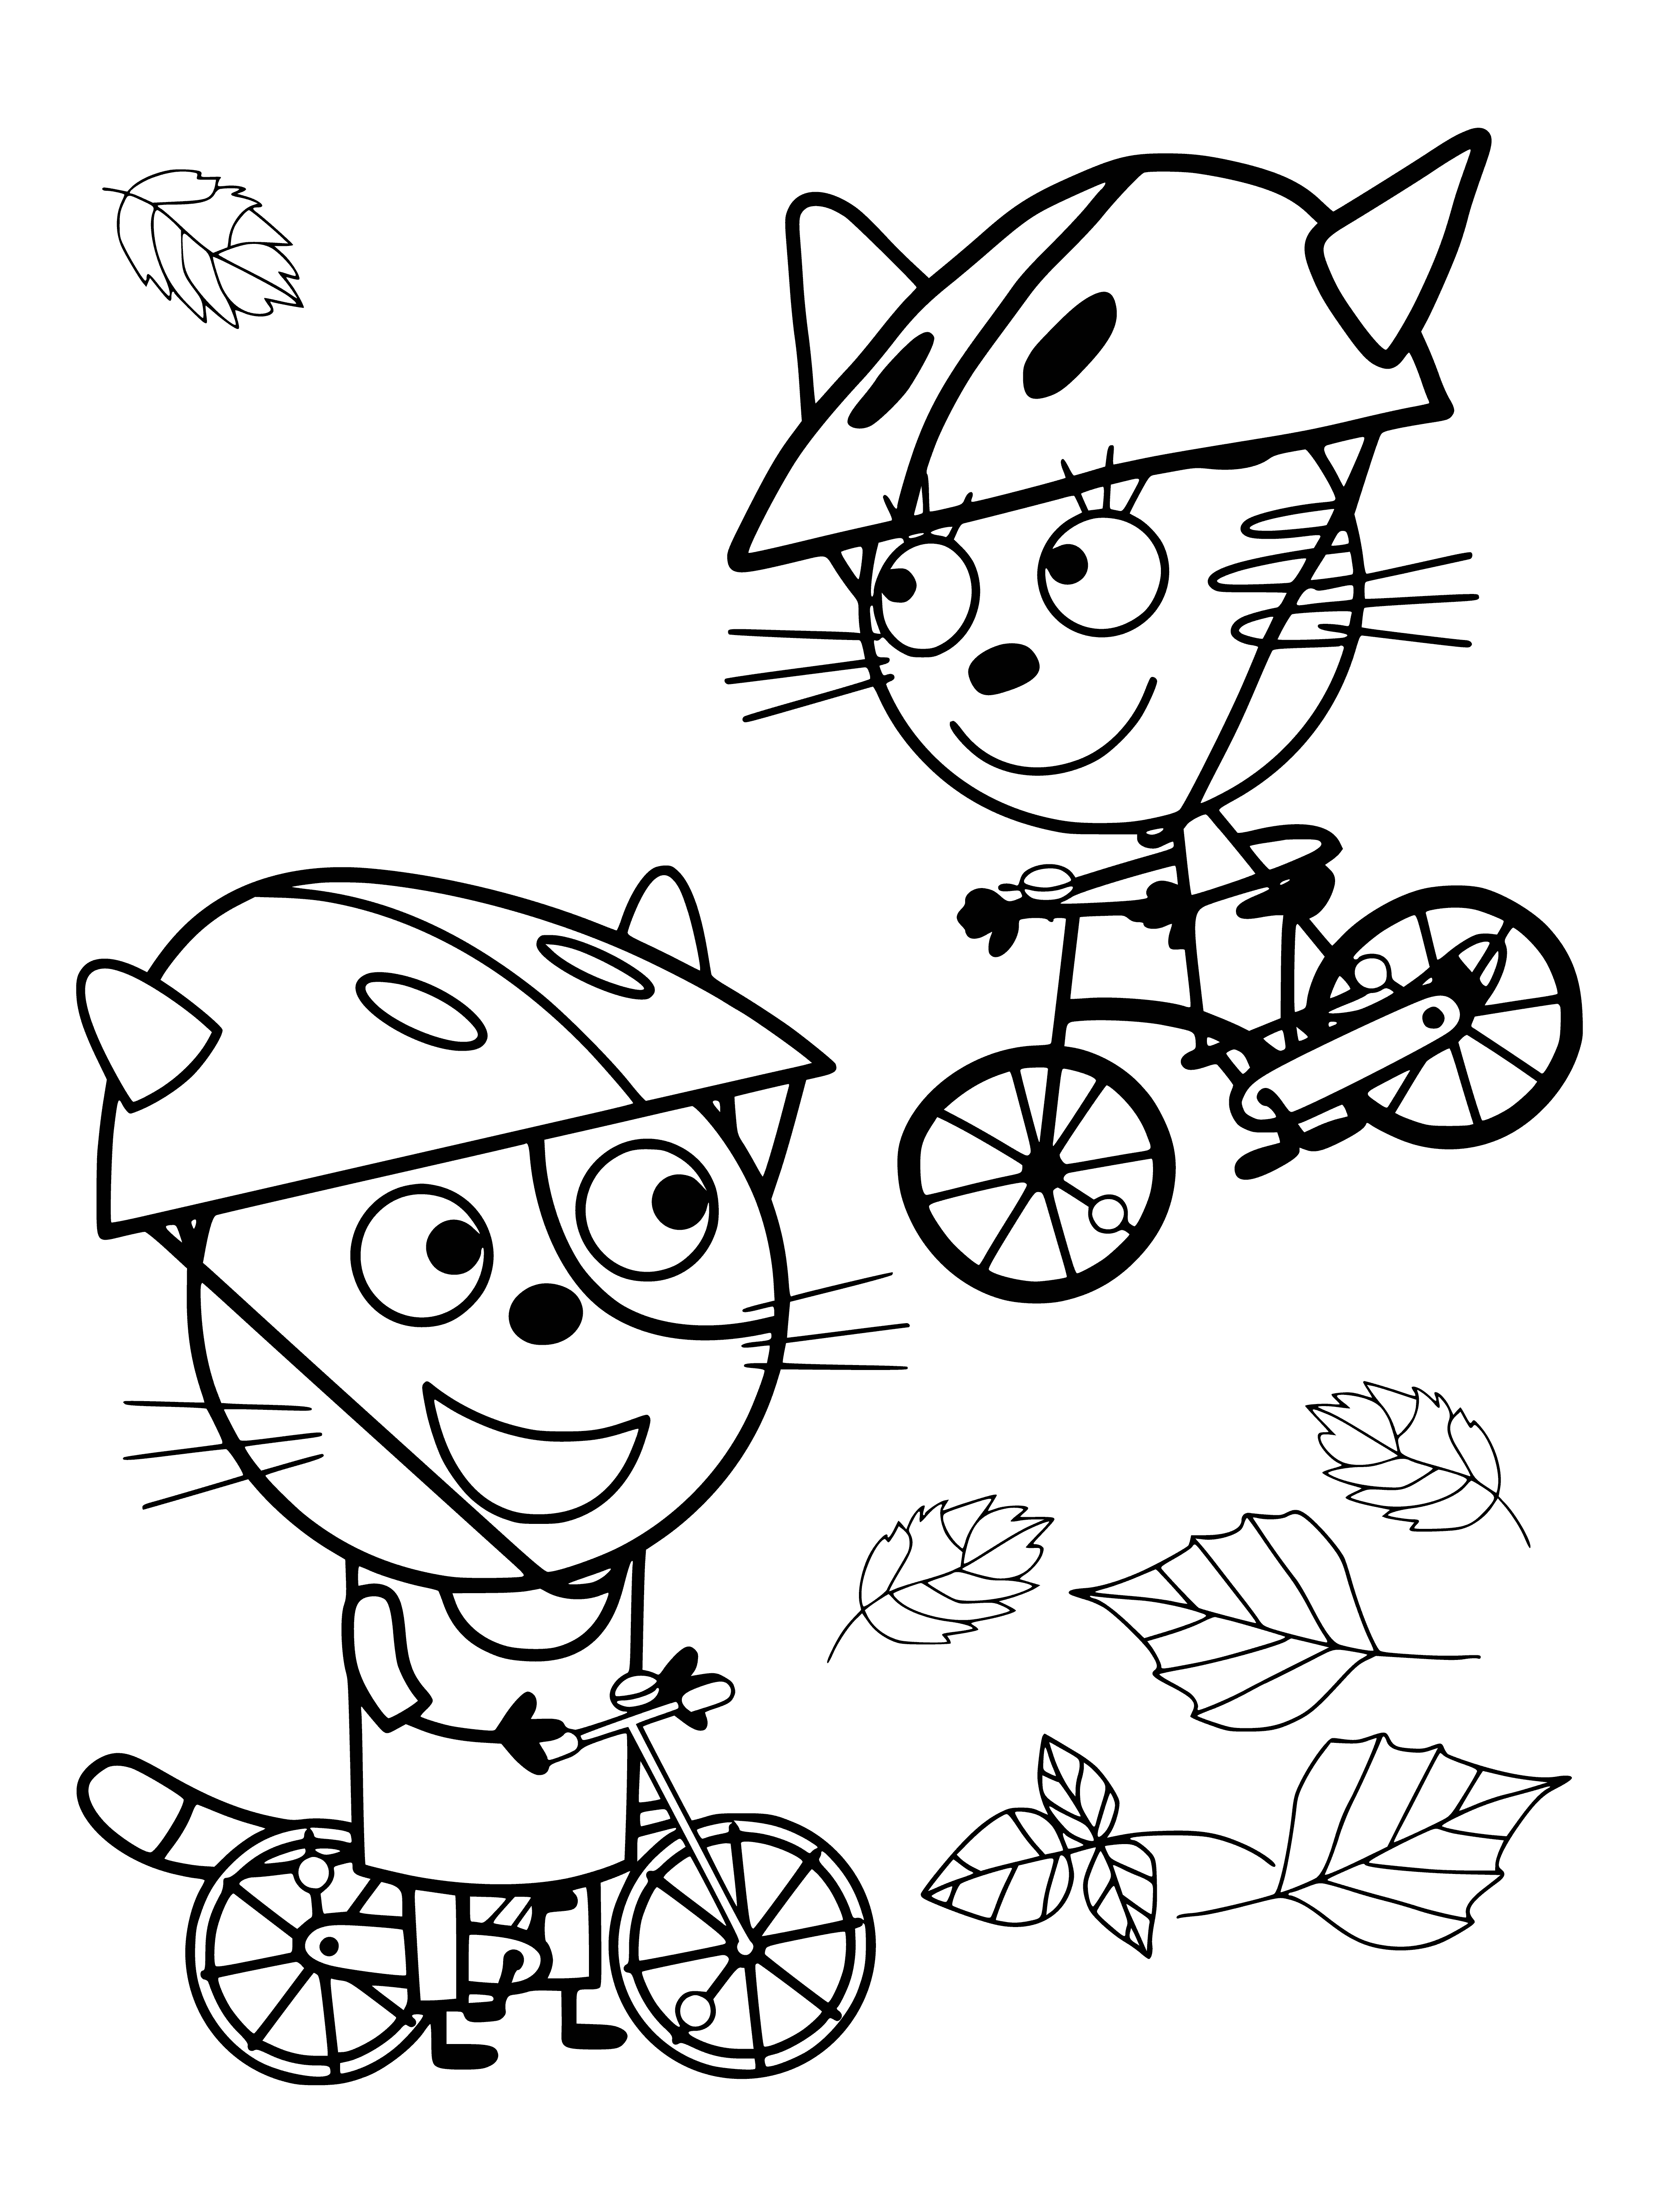 Chase e Caramel in bicicletta pagina da colorare